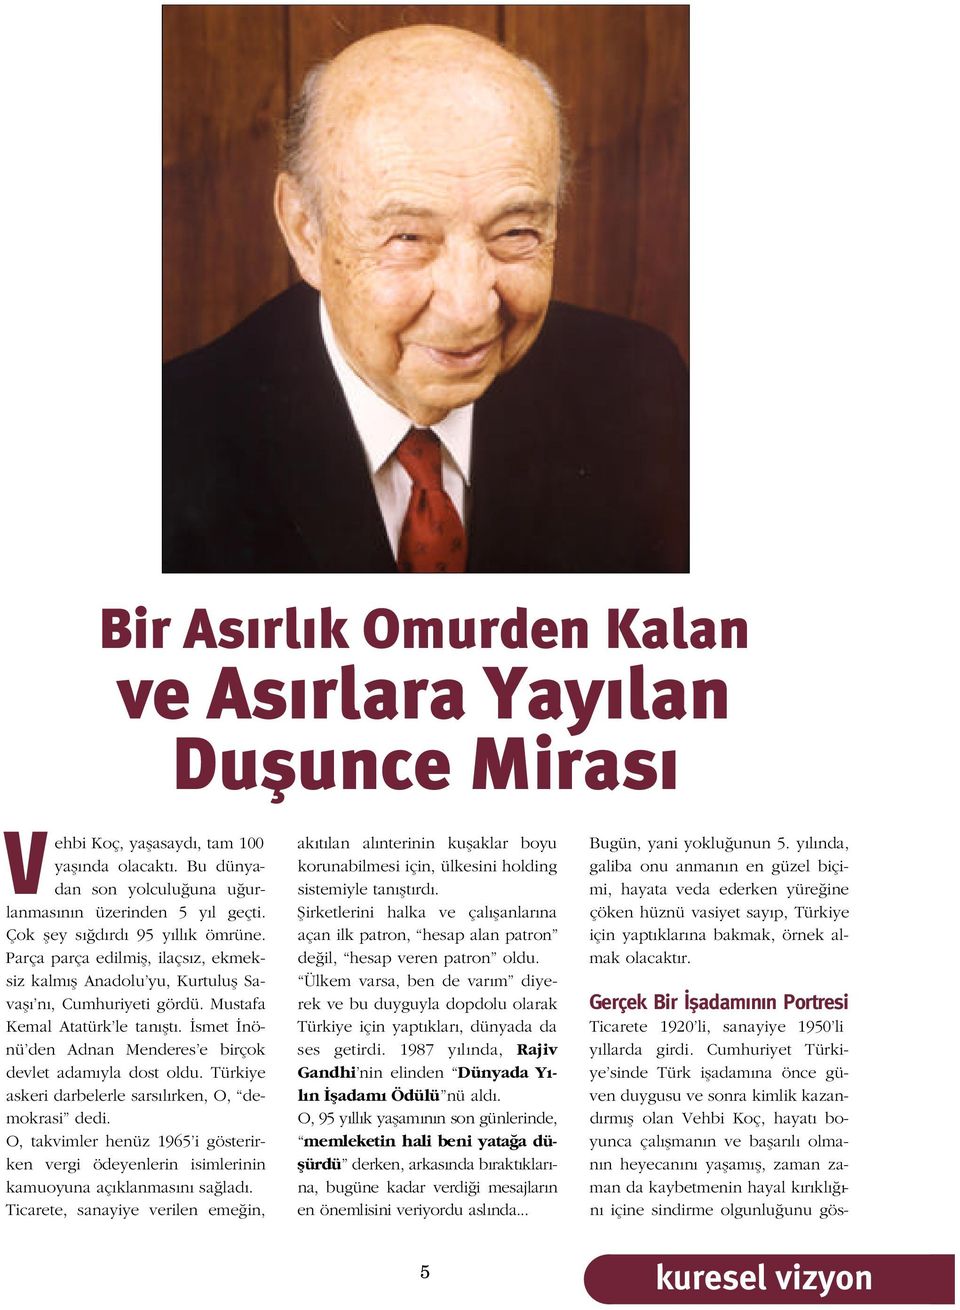 smet nönü den Adnan Menderes e birçok devlet adam yla dost oldu. Türkiye askeri darbelerle sars l rken, O, demokrasi dedi.